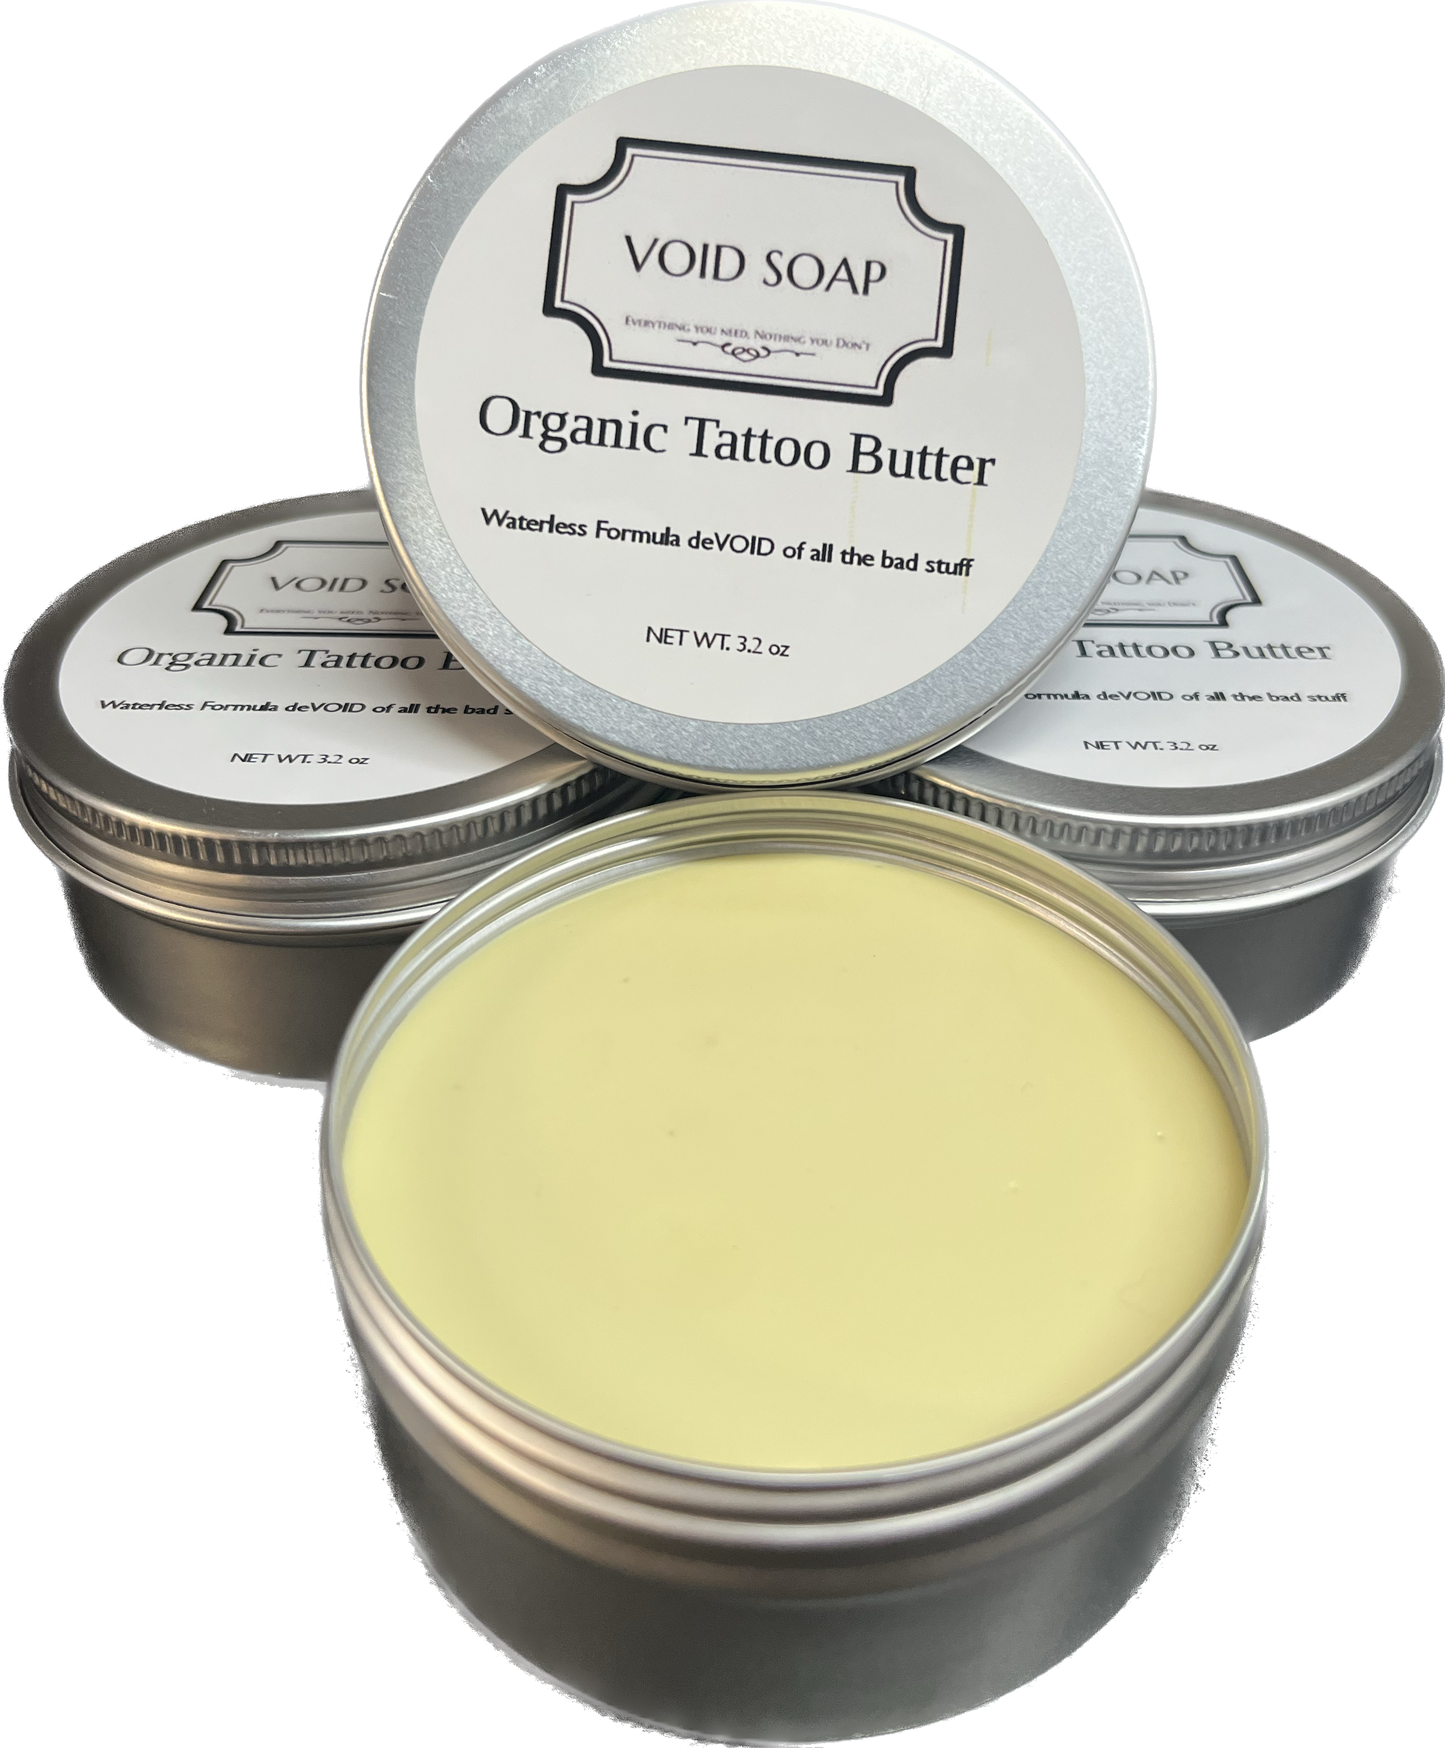 Organic Tattoo Butter